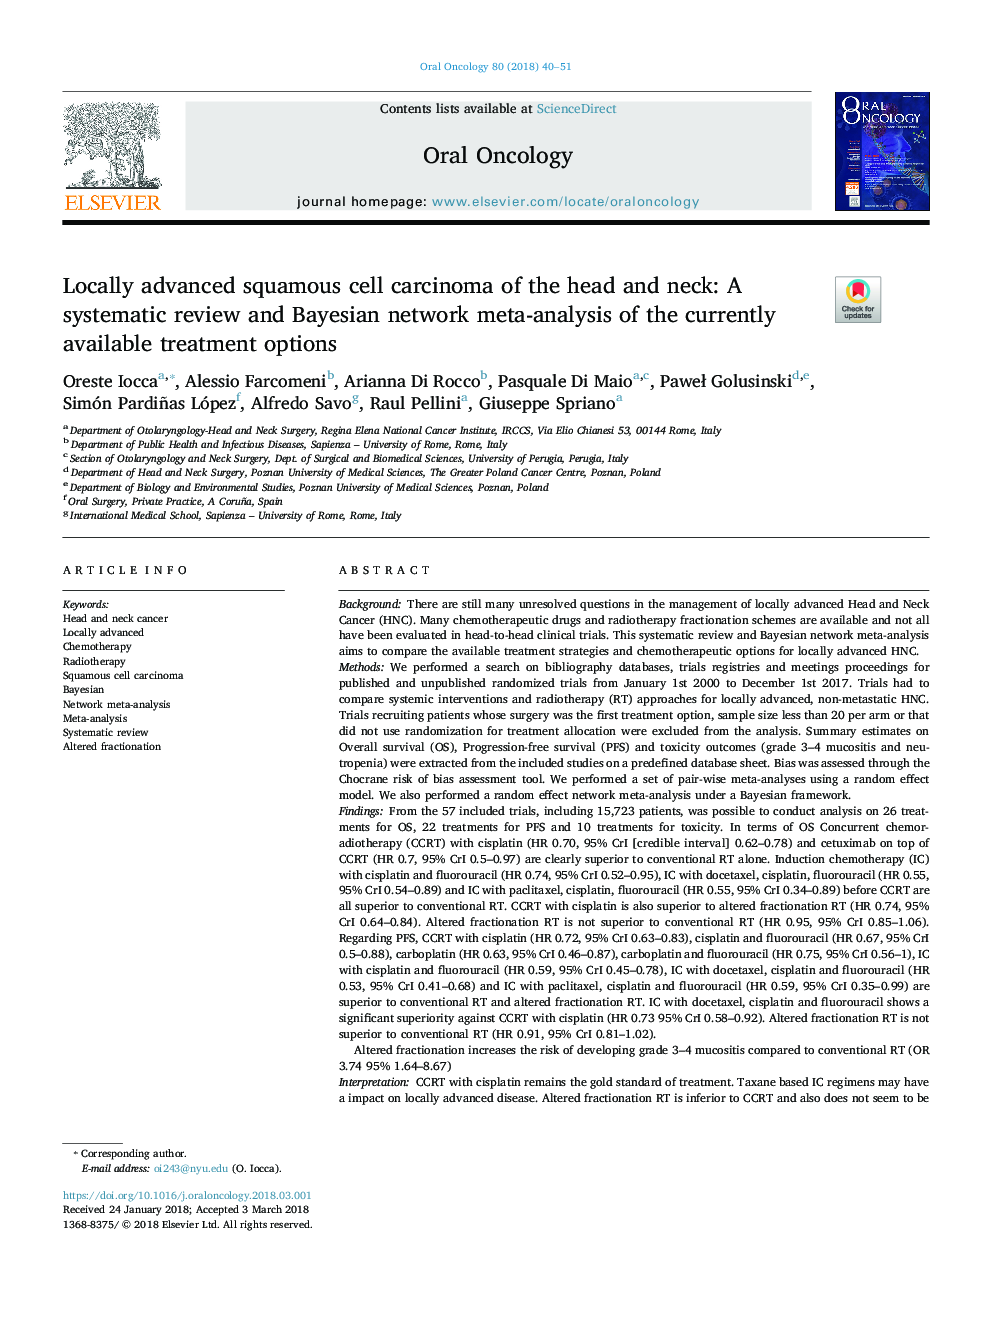 کارسینوم سلول سنگفرشی محلی سر و گردن: یک بررسی سیستماتیک و متاآنالیز شبکه های بیزی از گزینه های در دسترس موجود در حال حاضر 